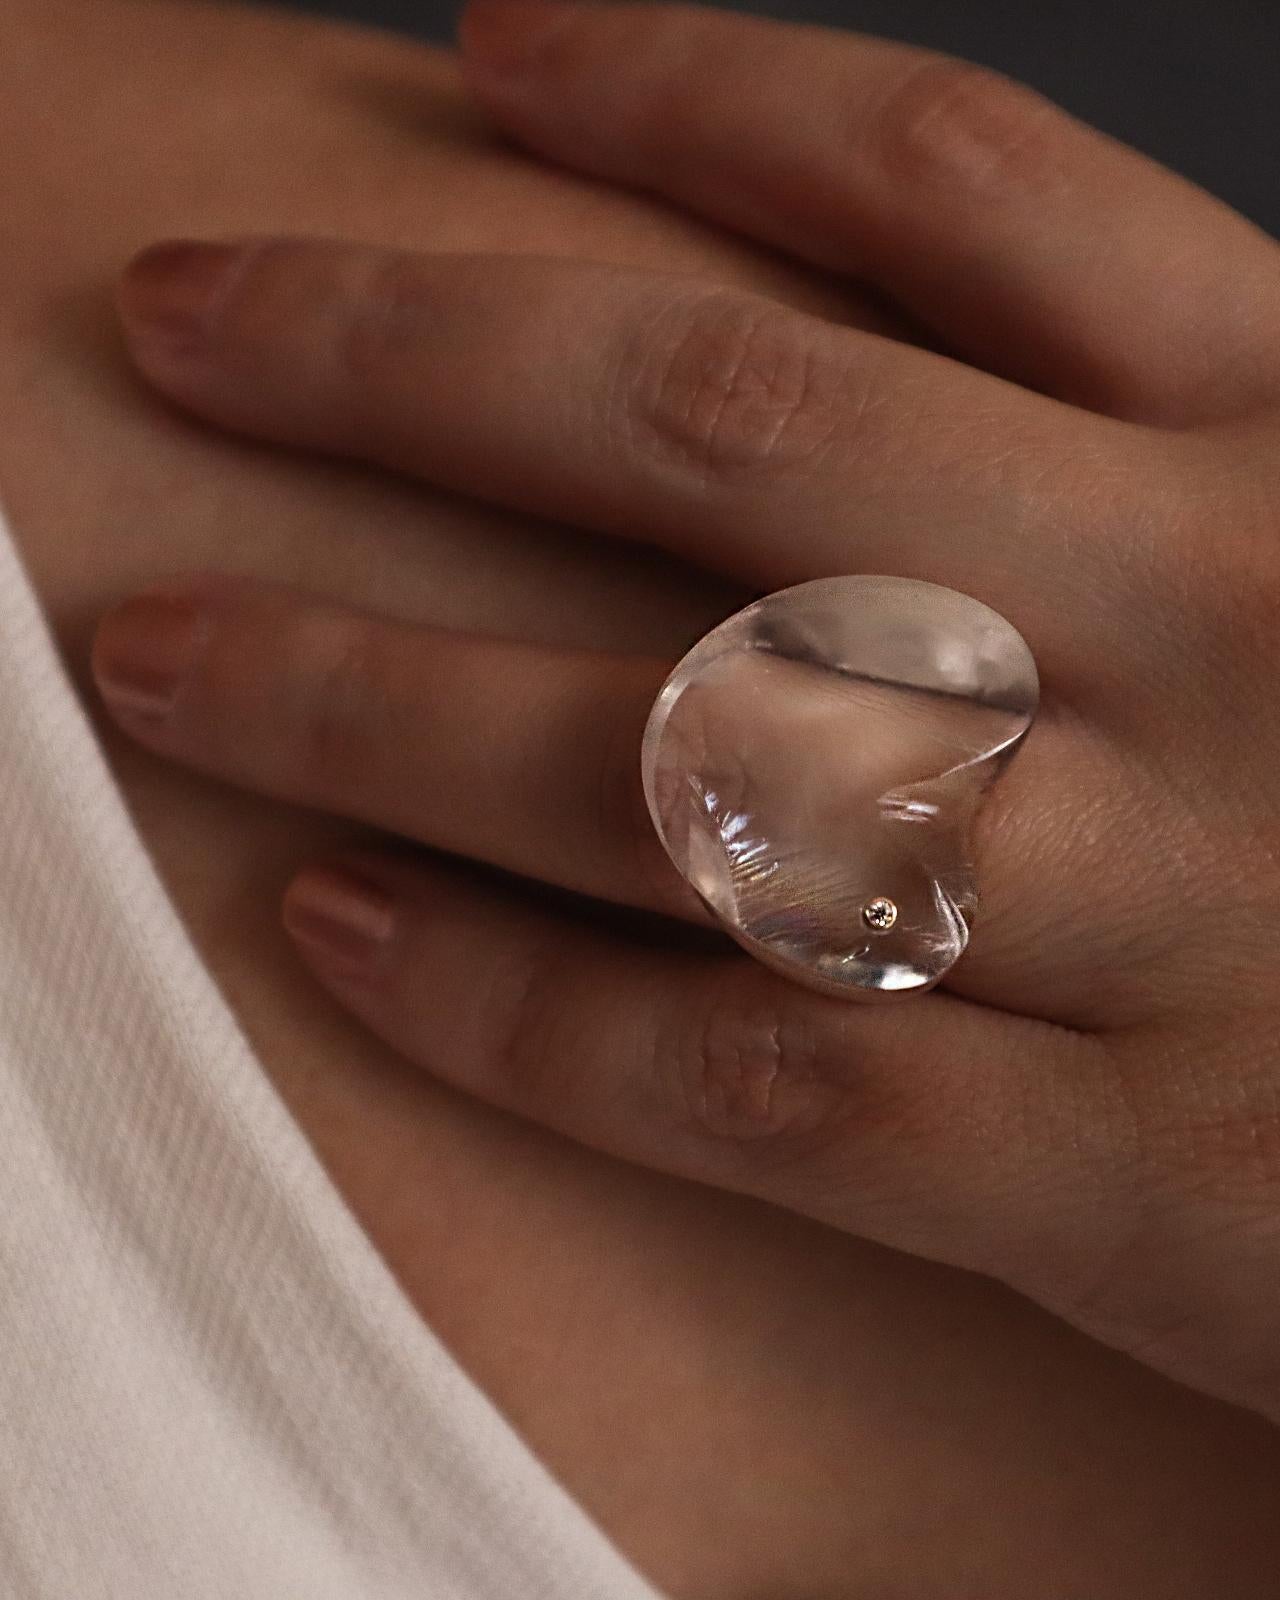 Eine exquisite Ring aus klarem Quarz Stein mit einem schönen Diamanten in einem 14k massiv Lünette geschmückt

Verfügbare Größen: 6.0, 7.25 , 8.0
Bitte teilen Sie uns beim Kauf Ihre Ringgröße mit.

Abmessungen:

Breite - 29 mm

Höhe - 27